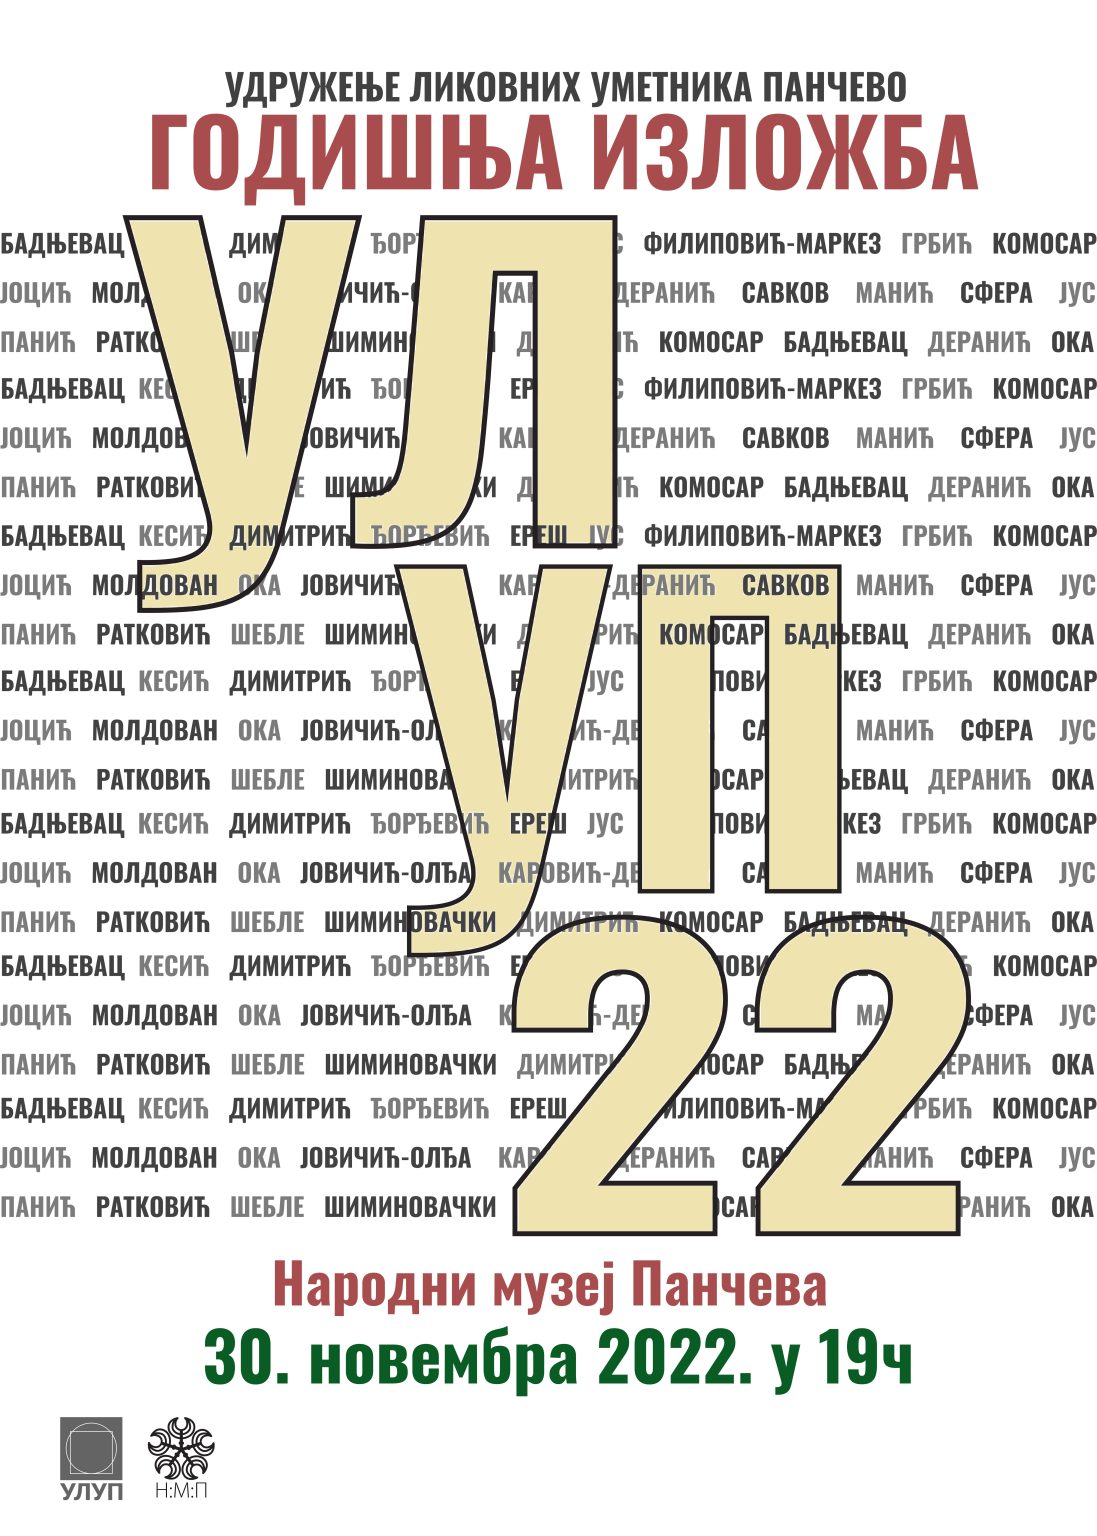 Pančevo: Godišnja izložba Udruženja likovnih umetnika sutra u Narodnom muzeju